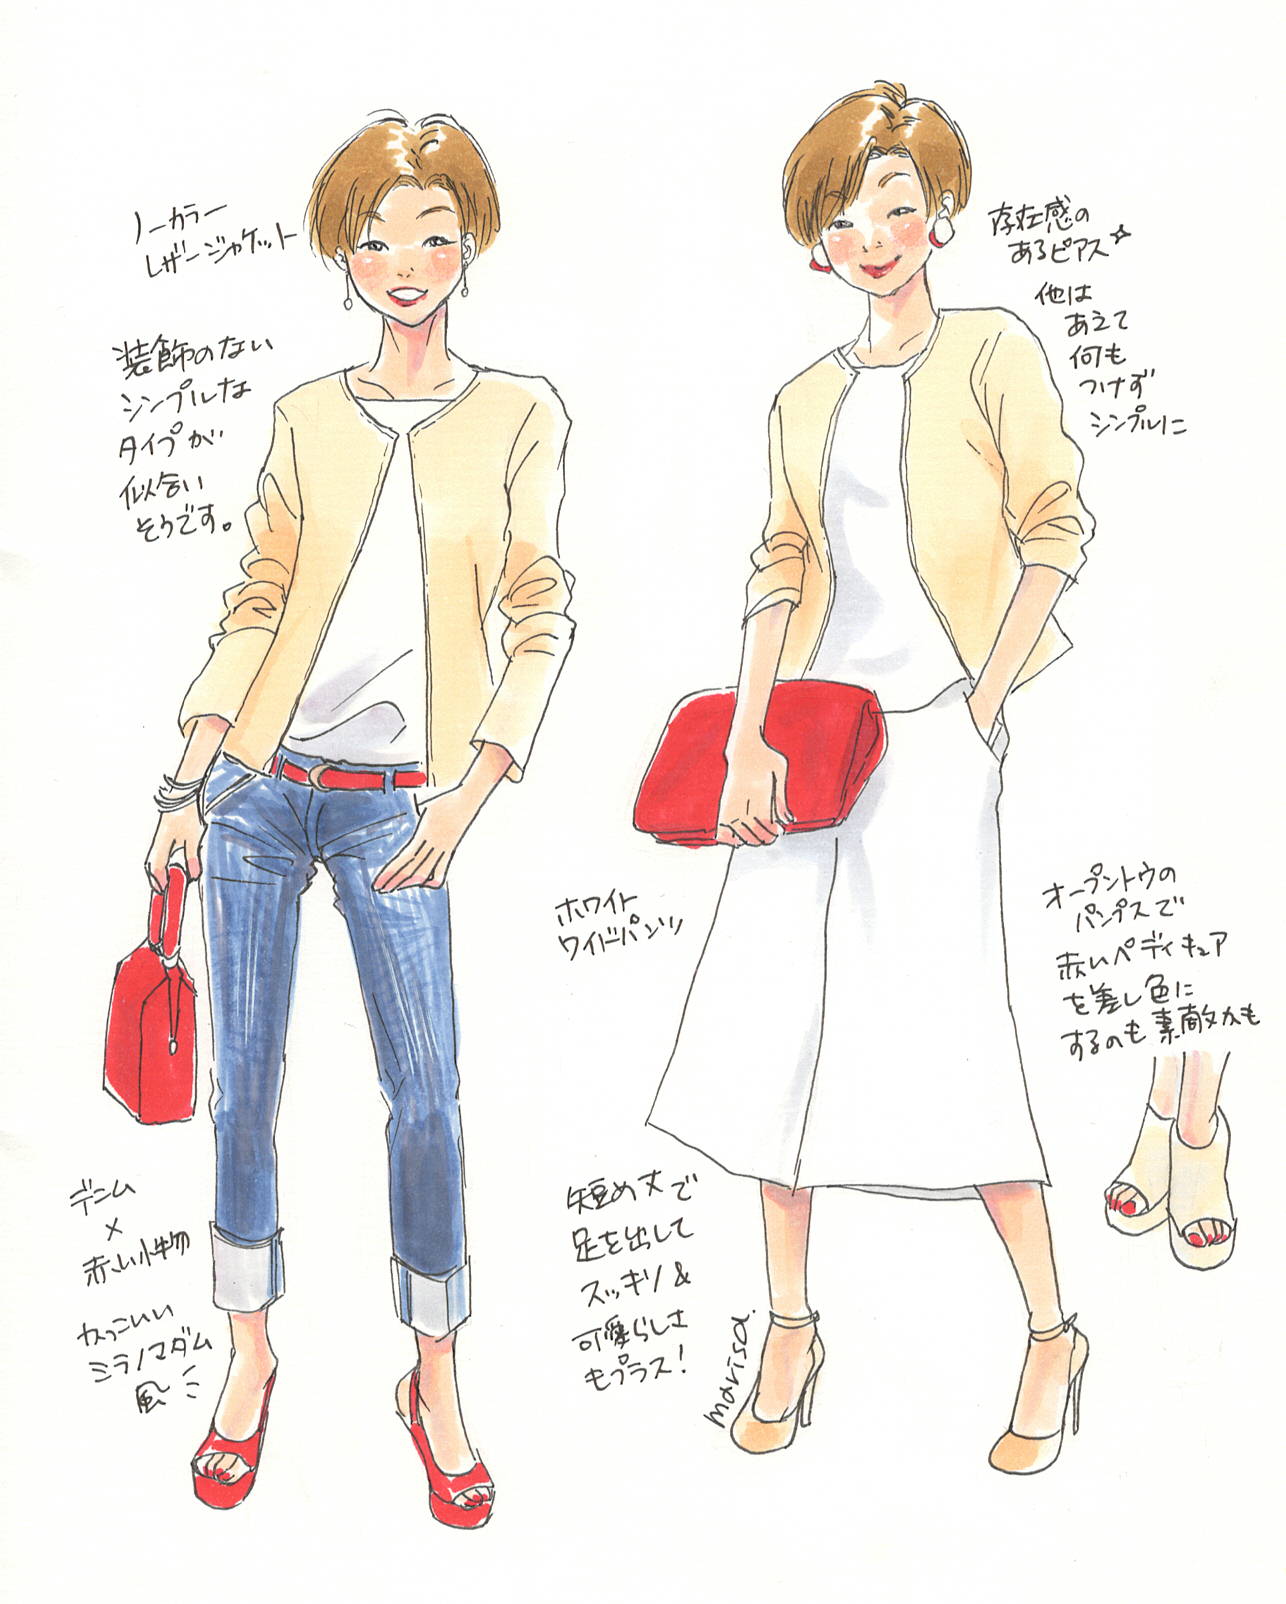 この服着たい をイラストで叶える Vol 8 Marisa Hanasaki Illustration